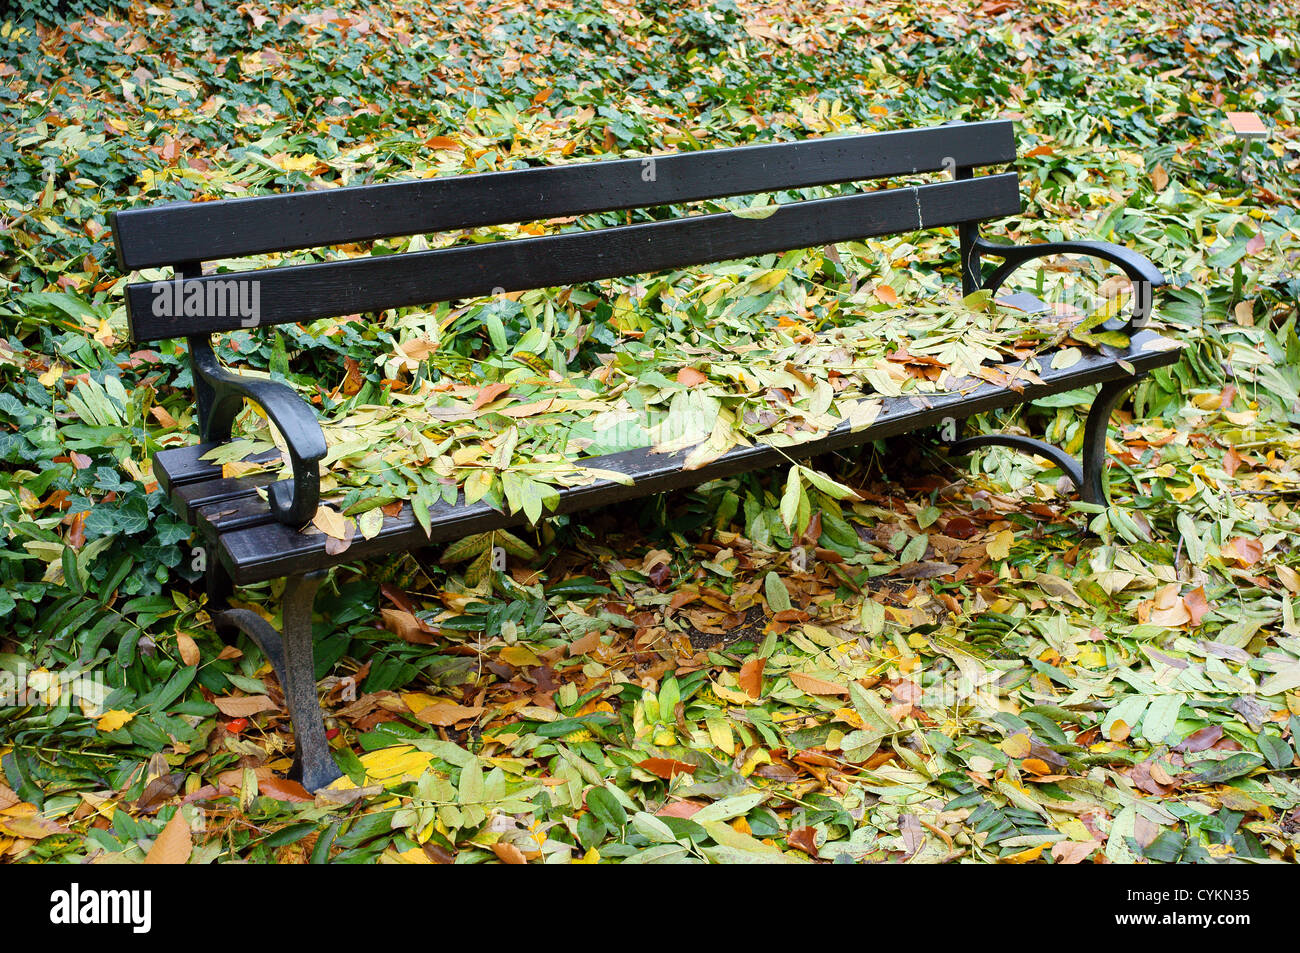 Banc de parc en automne avec les feuilles tombées sur elle et autour Banque D'Images